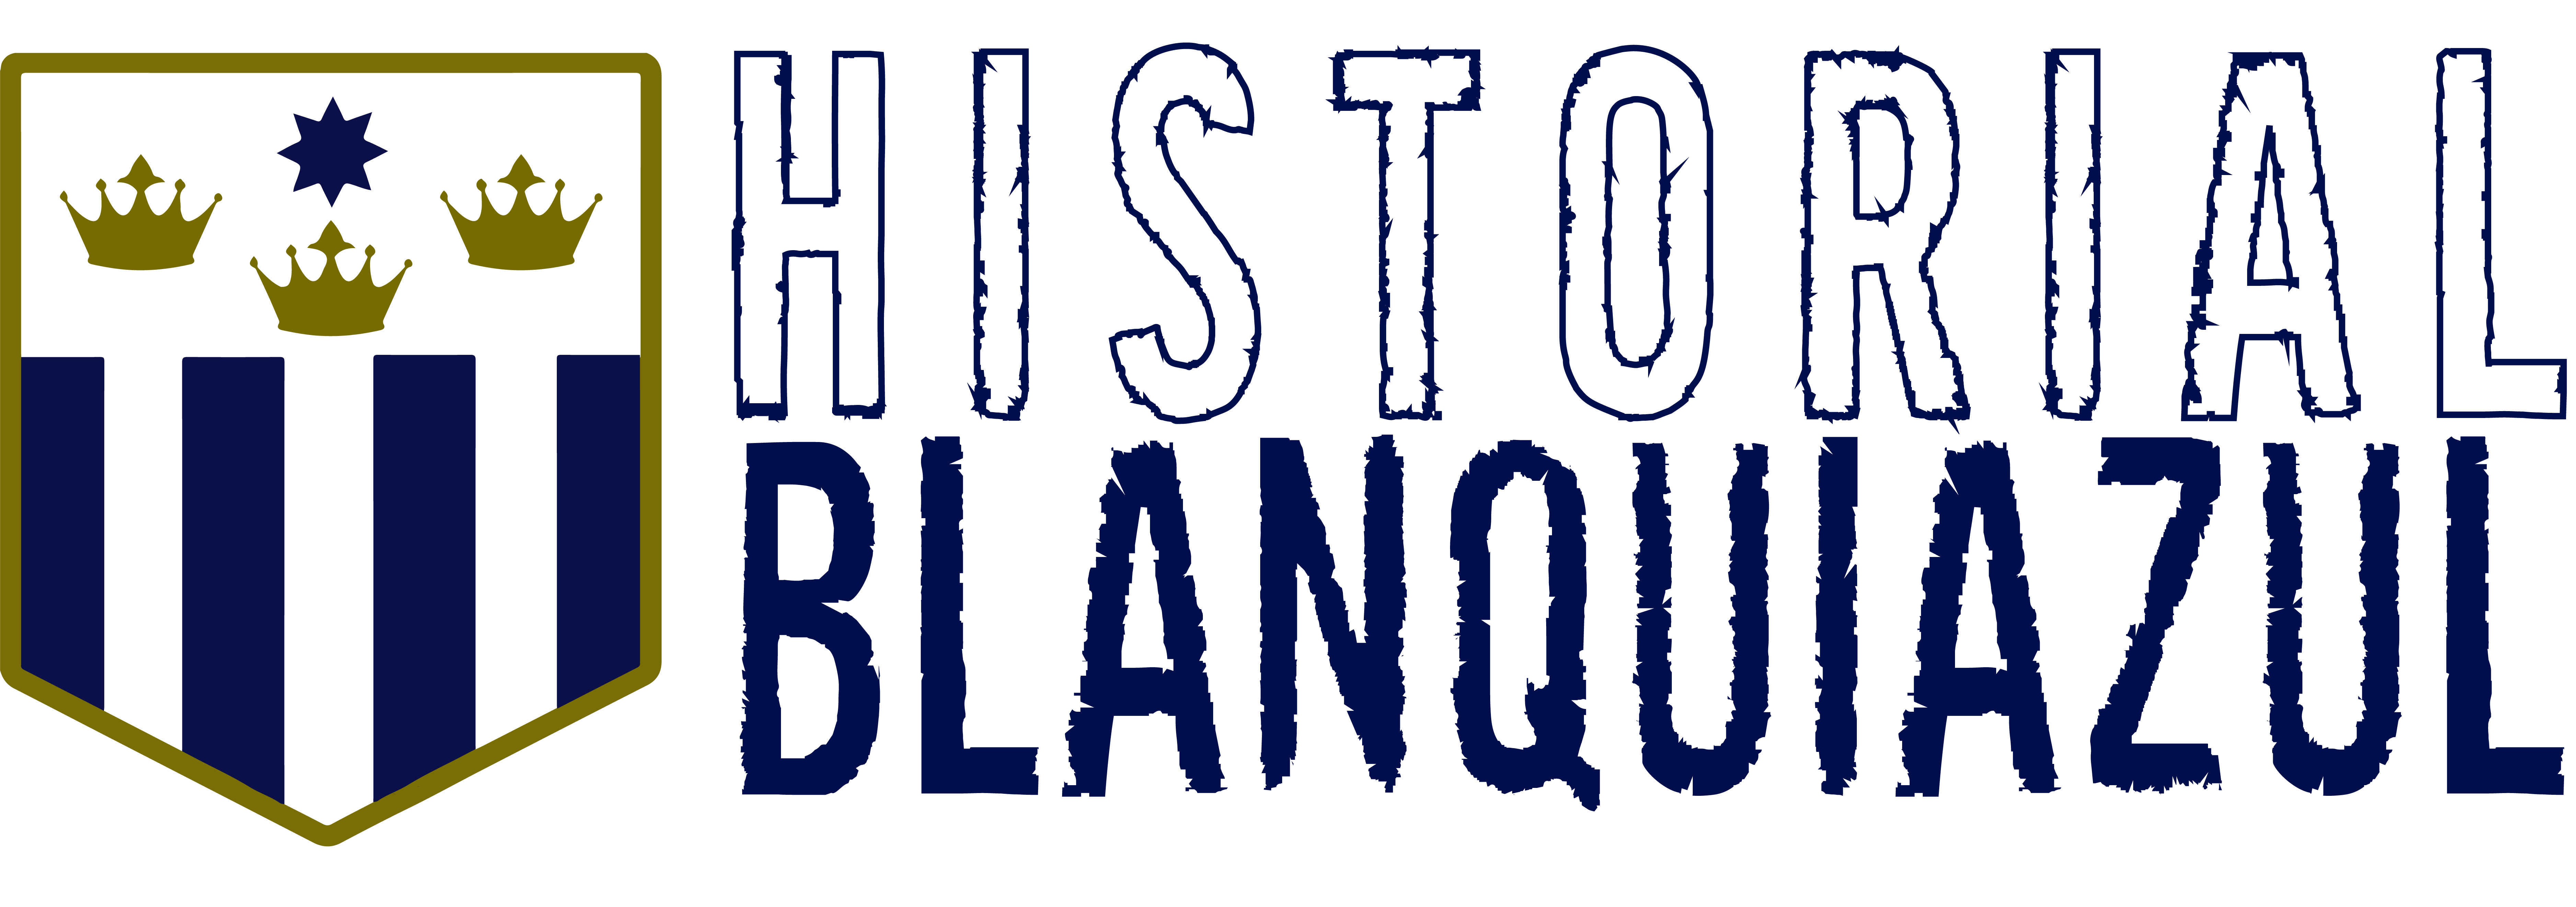 Historial Blanquiazul